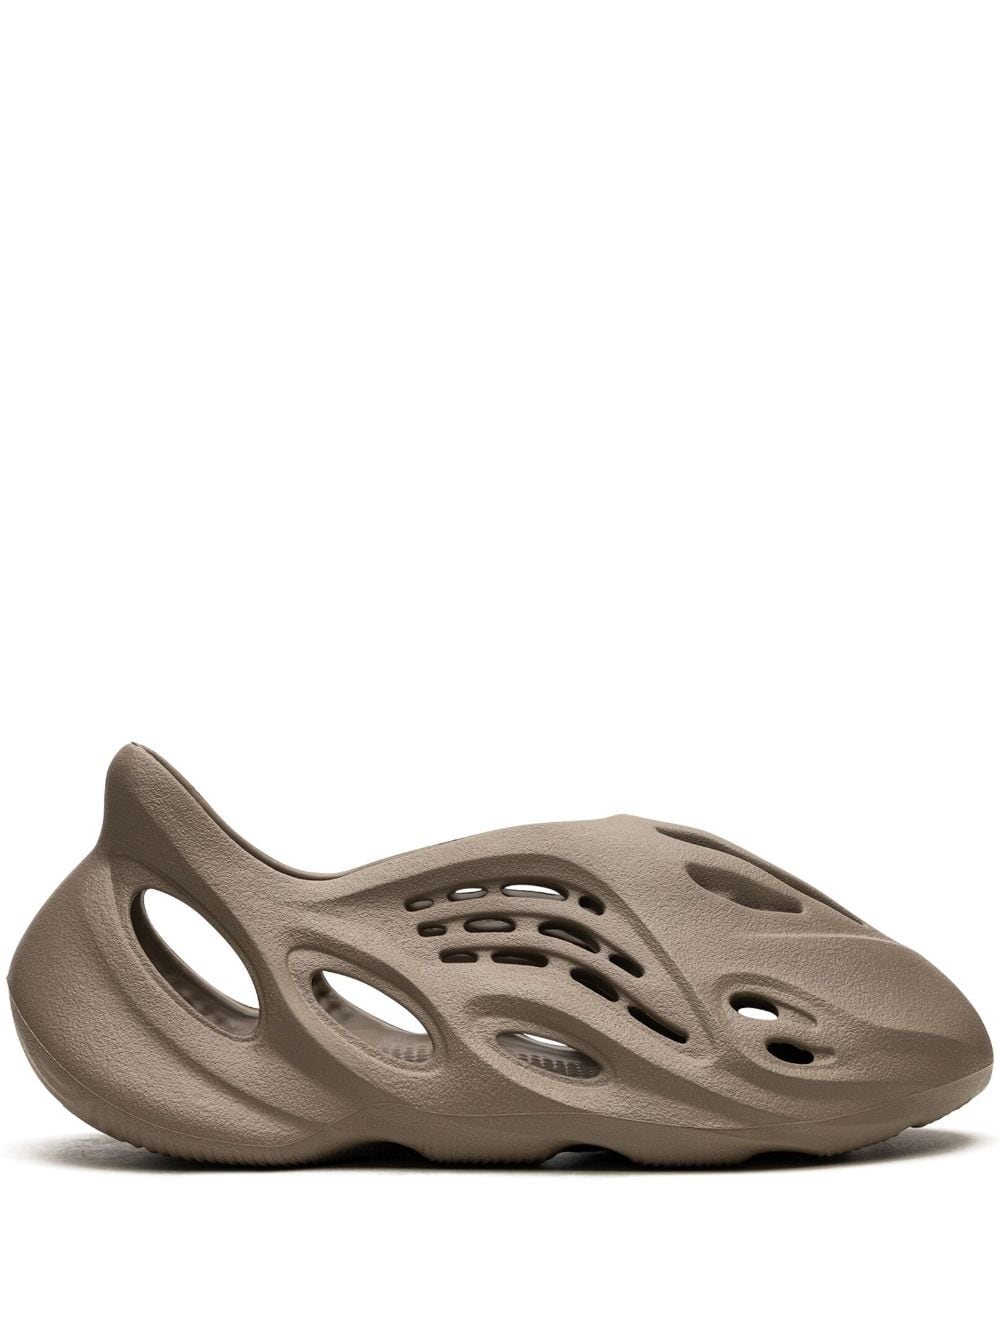 adidas YEEZY Foam Runner "Stone Taupe" sneakers - Neutrals von adidas